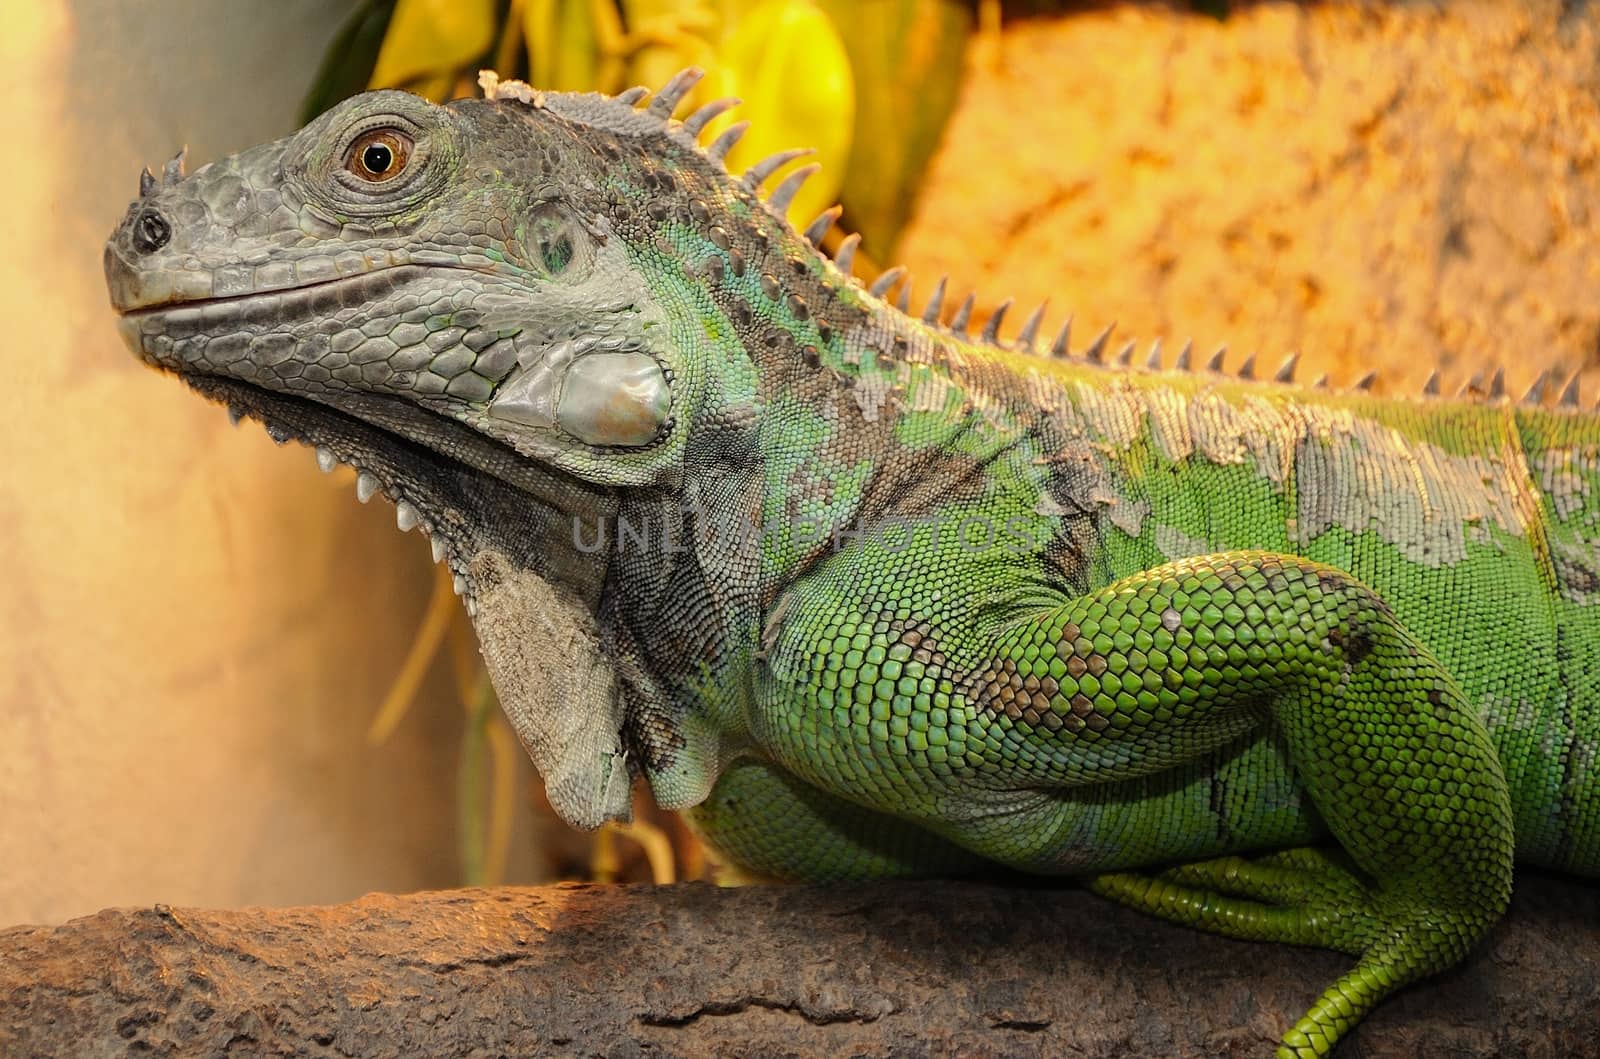 Green iguana jailed in terrarium.